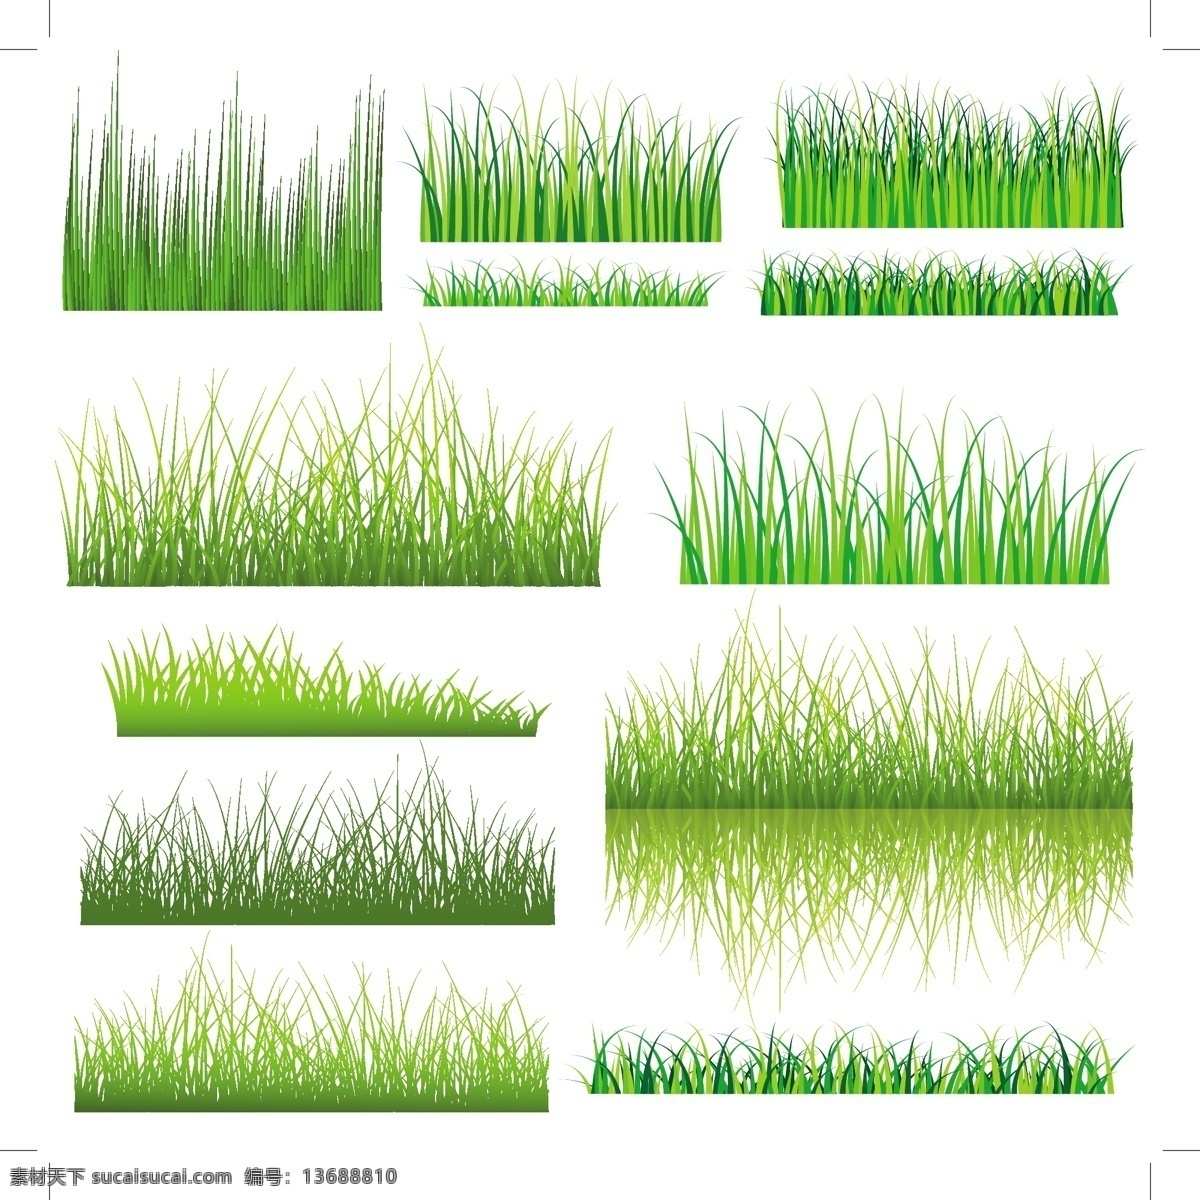 向量 元素 集 绿 草 草绿色 绿色 矢量植物 绿色的草地 矢量图 其他矢量图